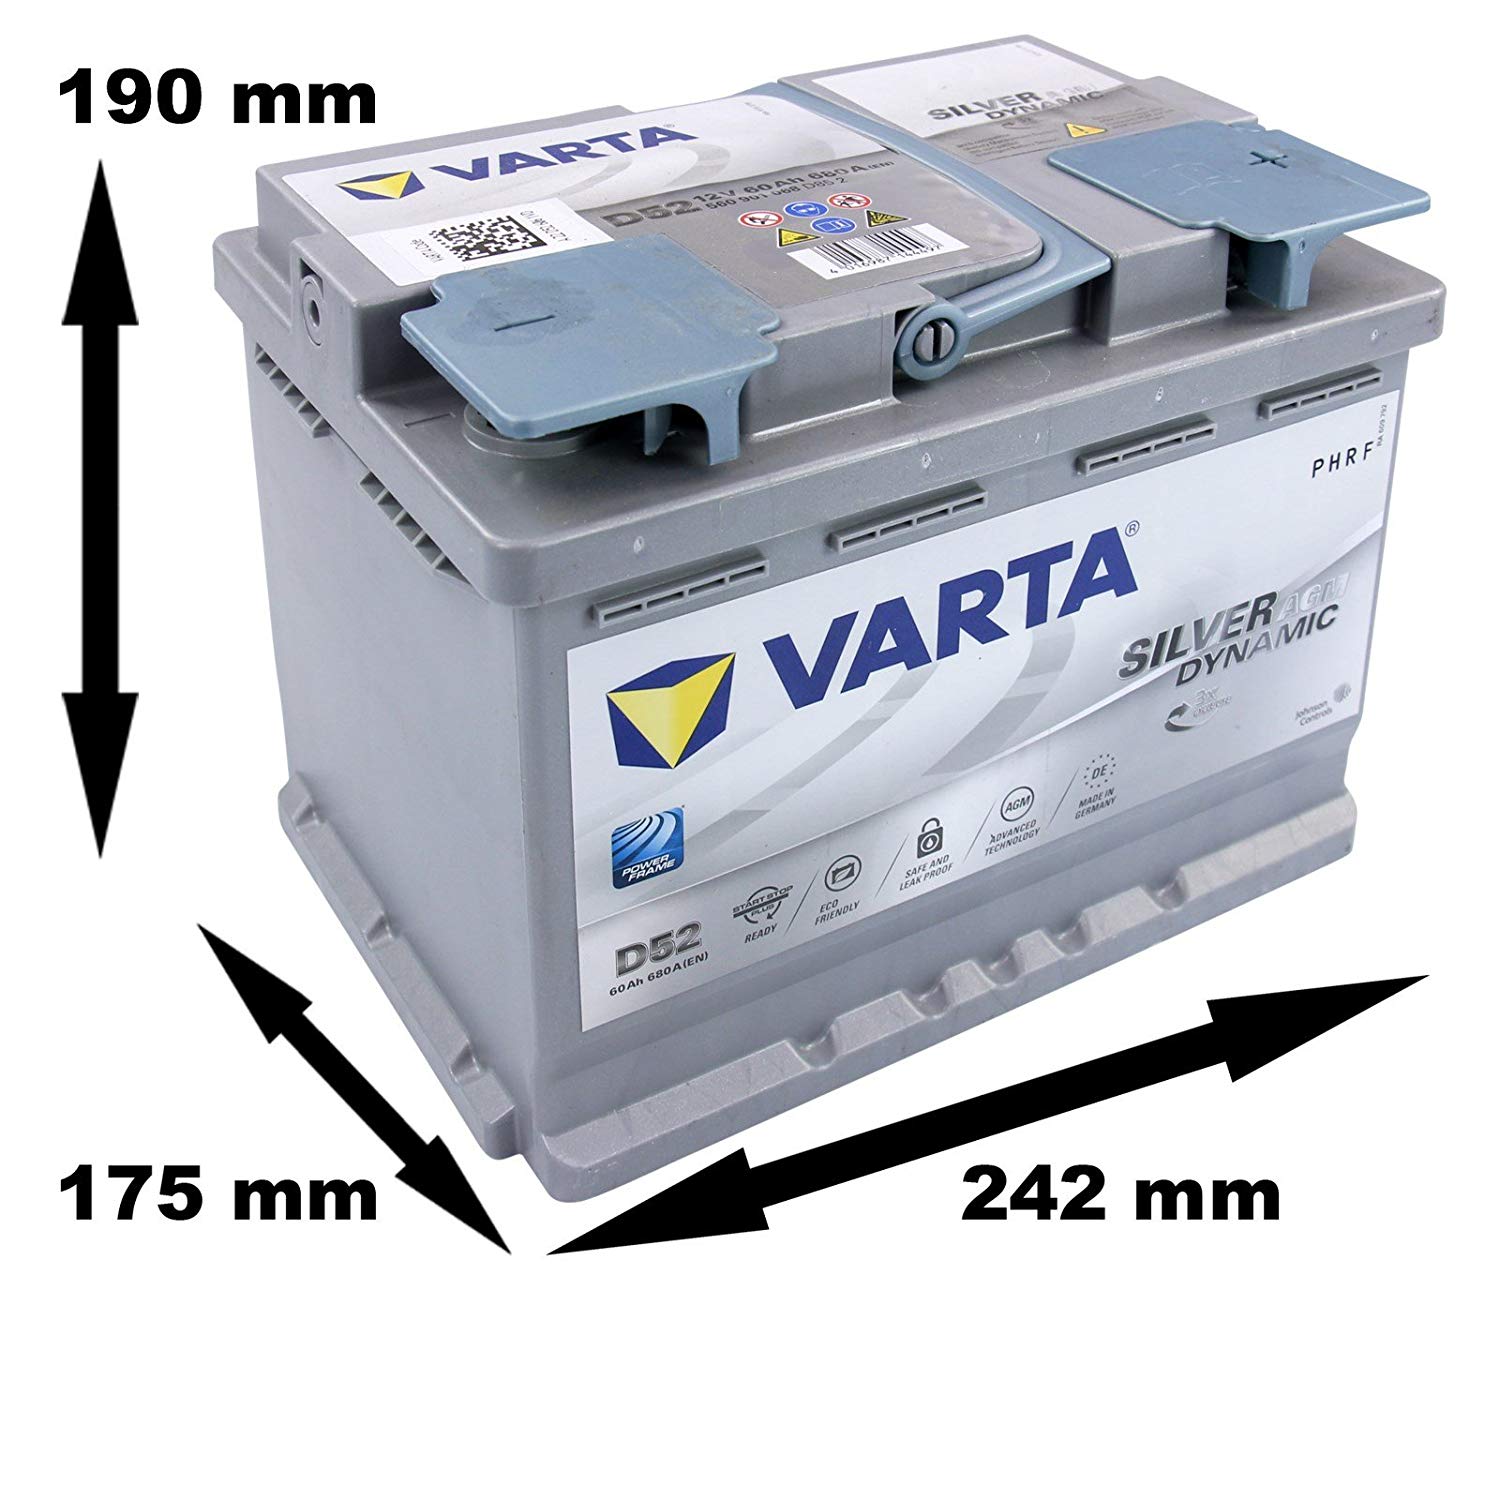 VARTA Silver Dynamic AGM 12V 60Ah D52 ab € 129,50